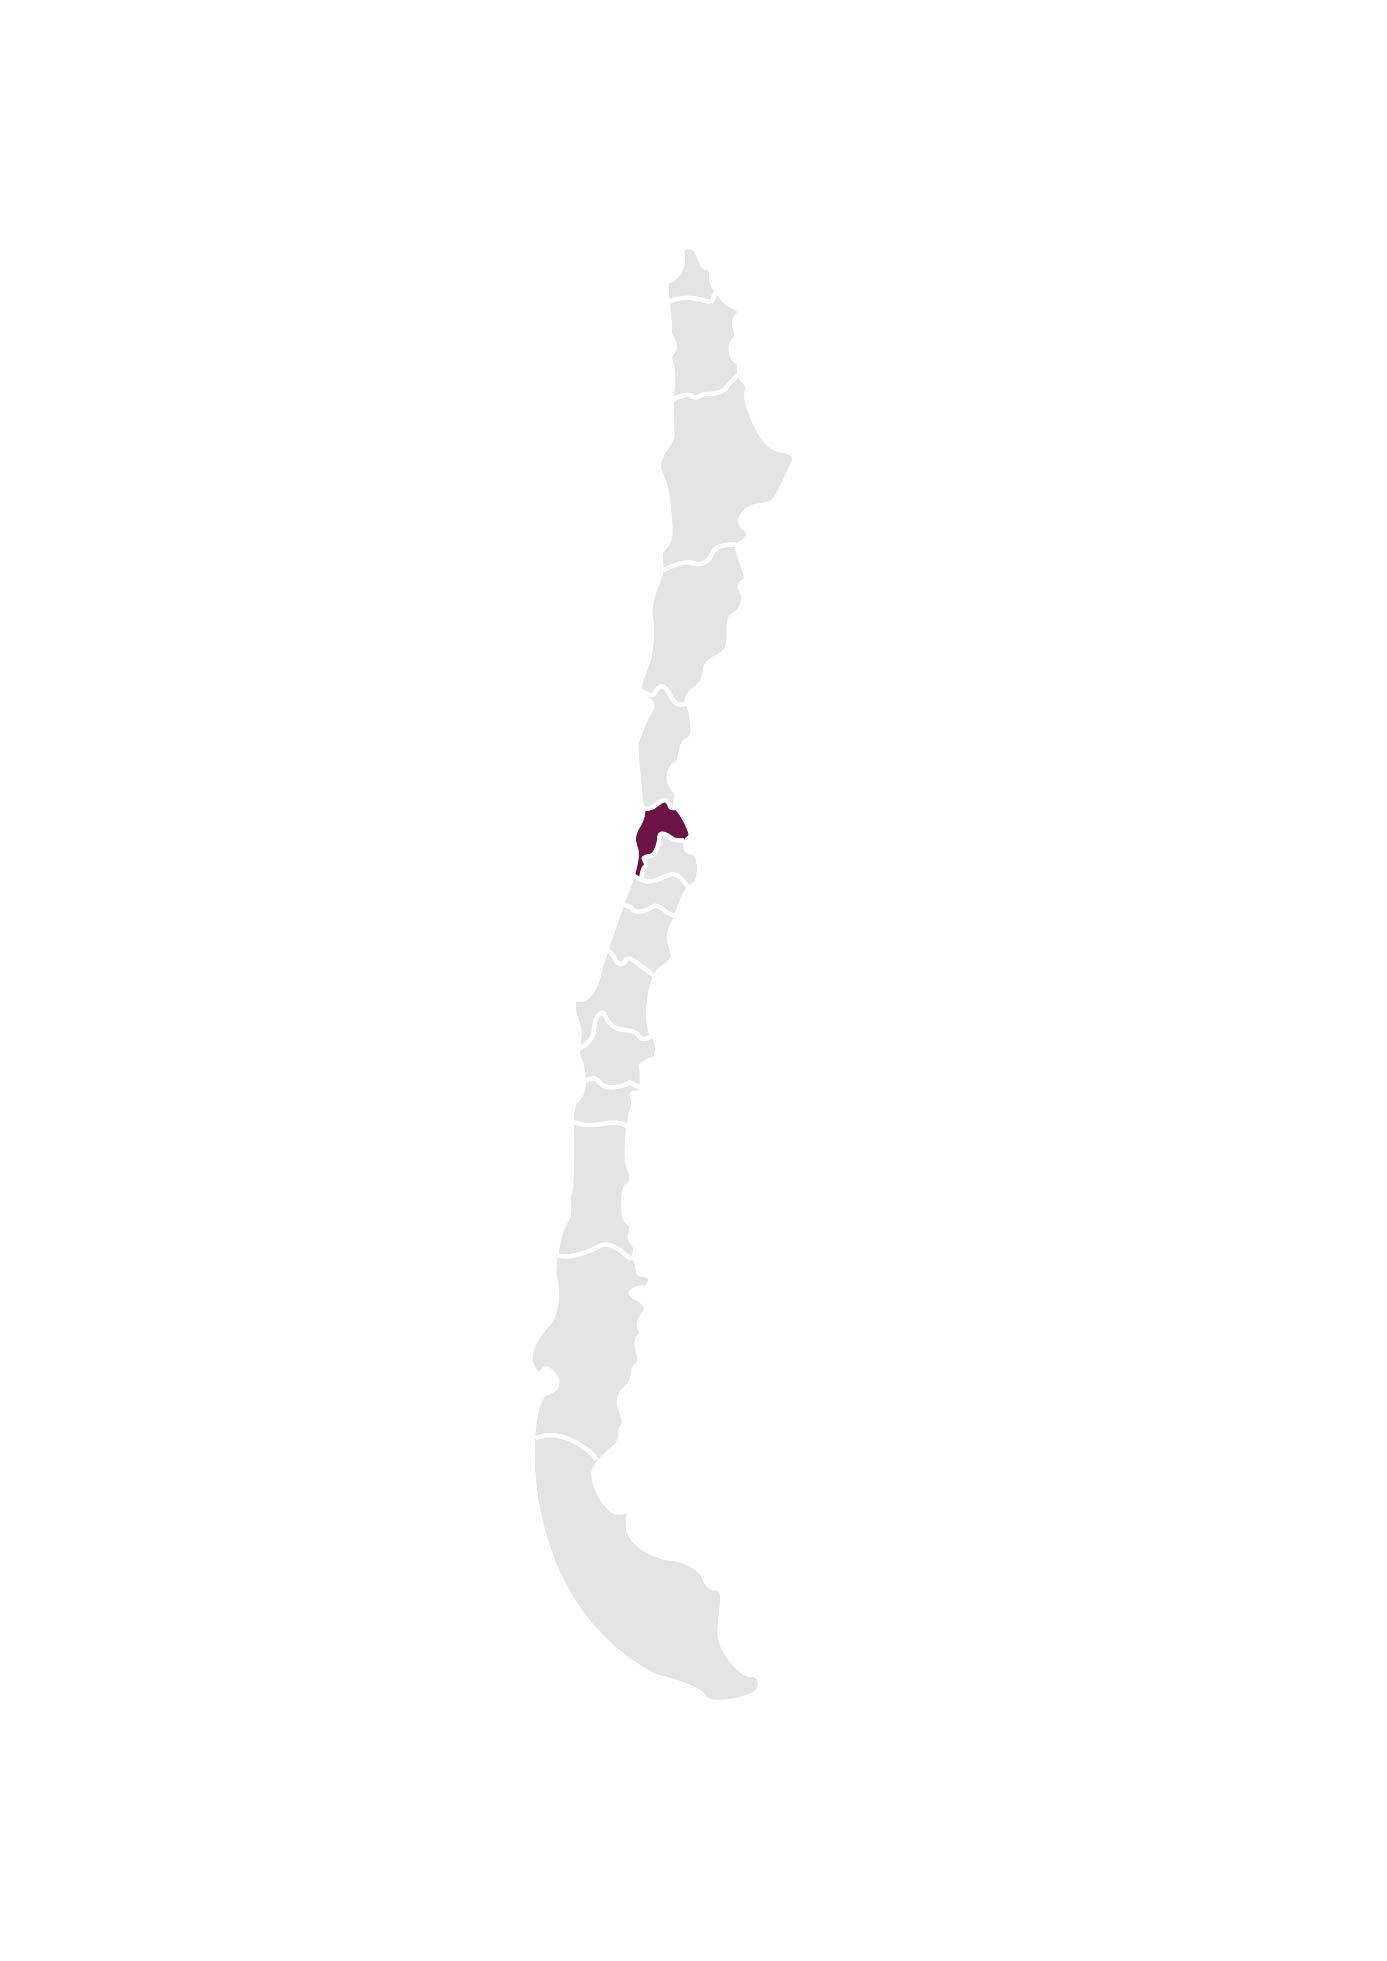 Chile_regions_Valle de Leyda